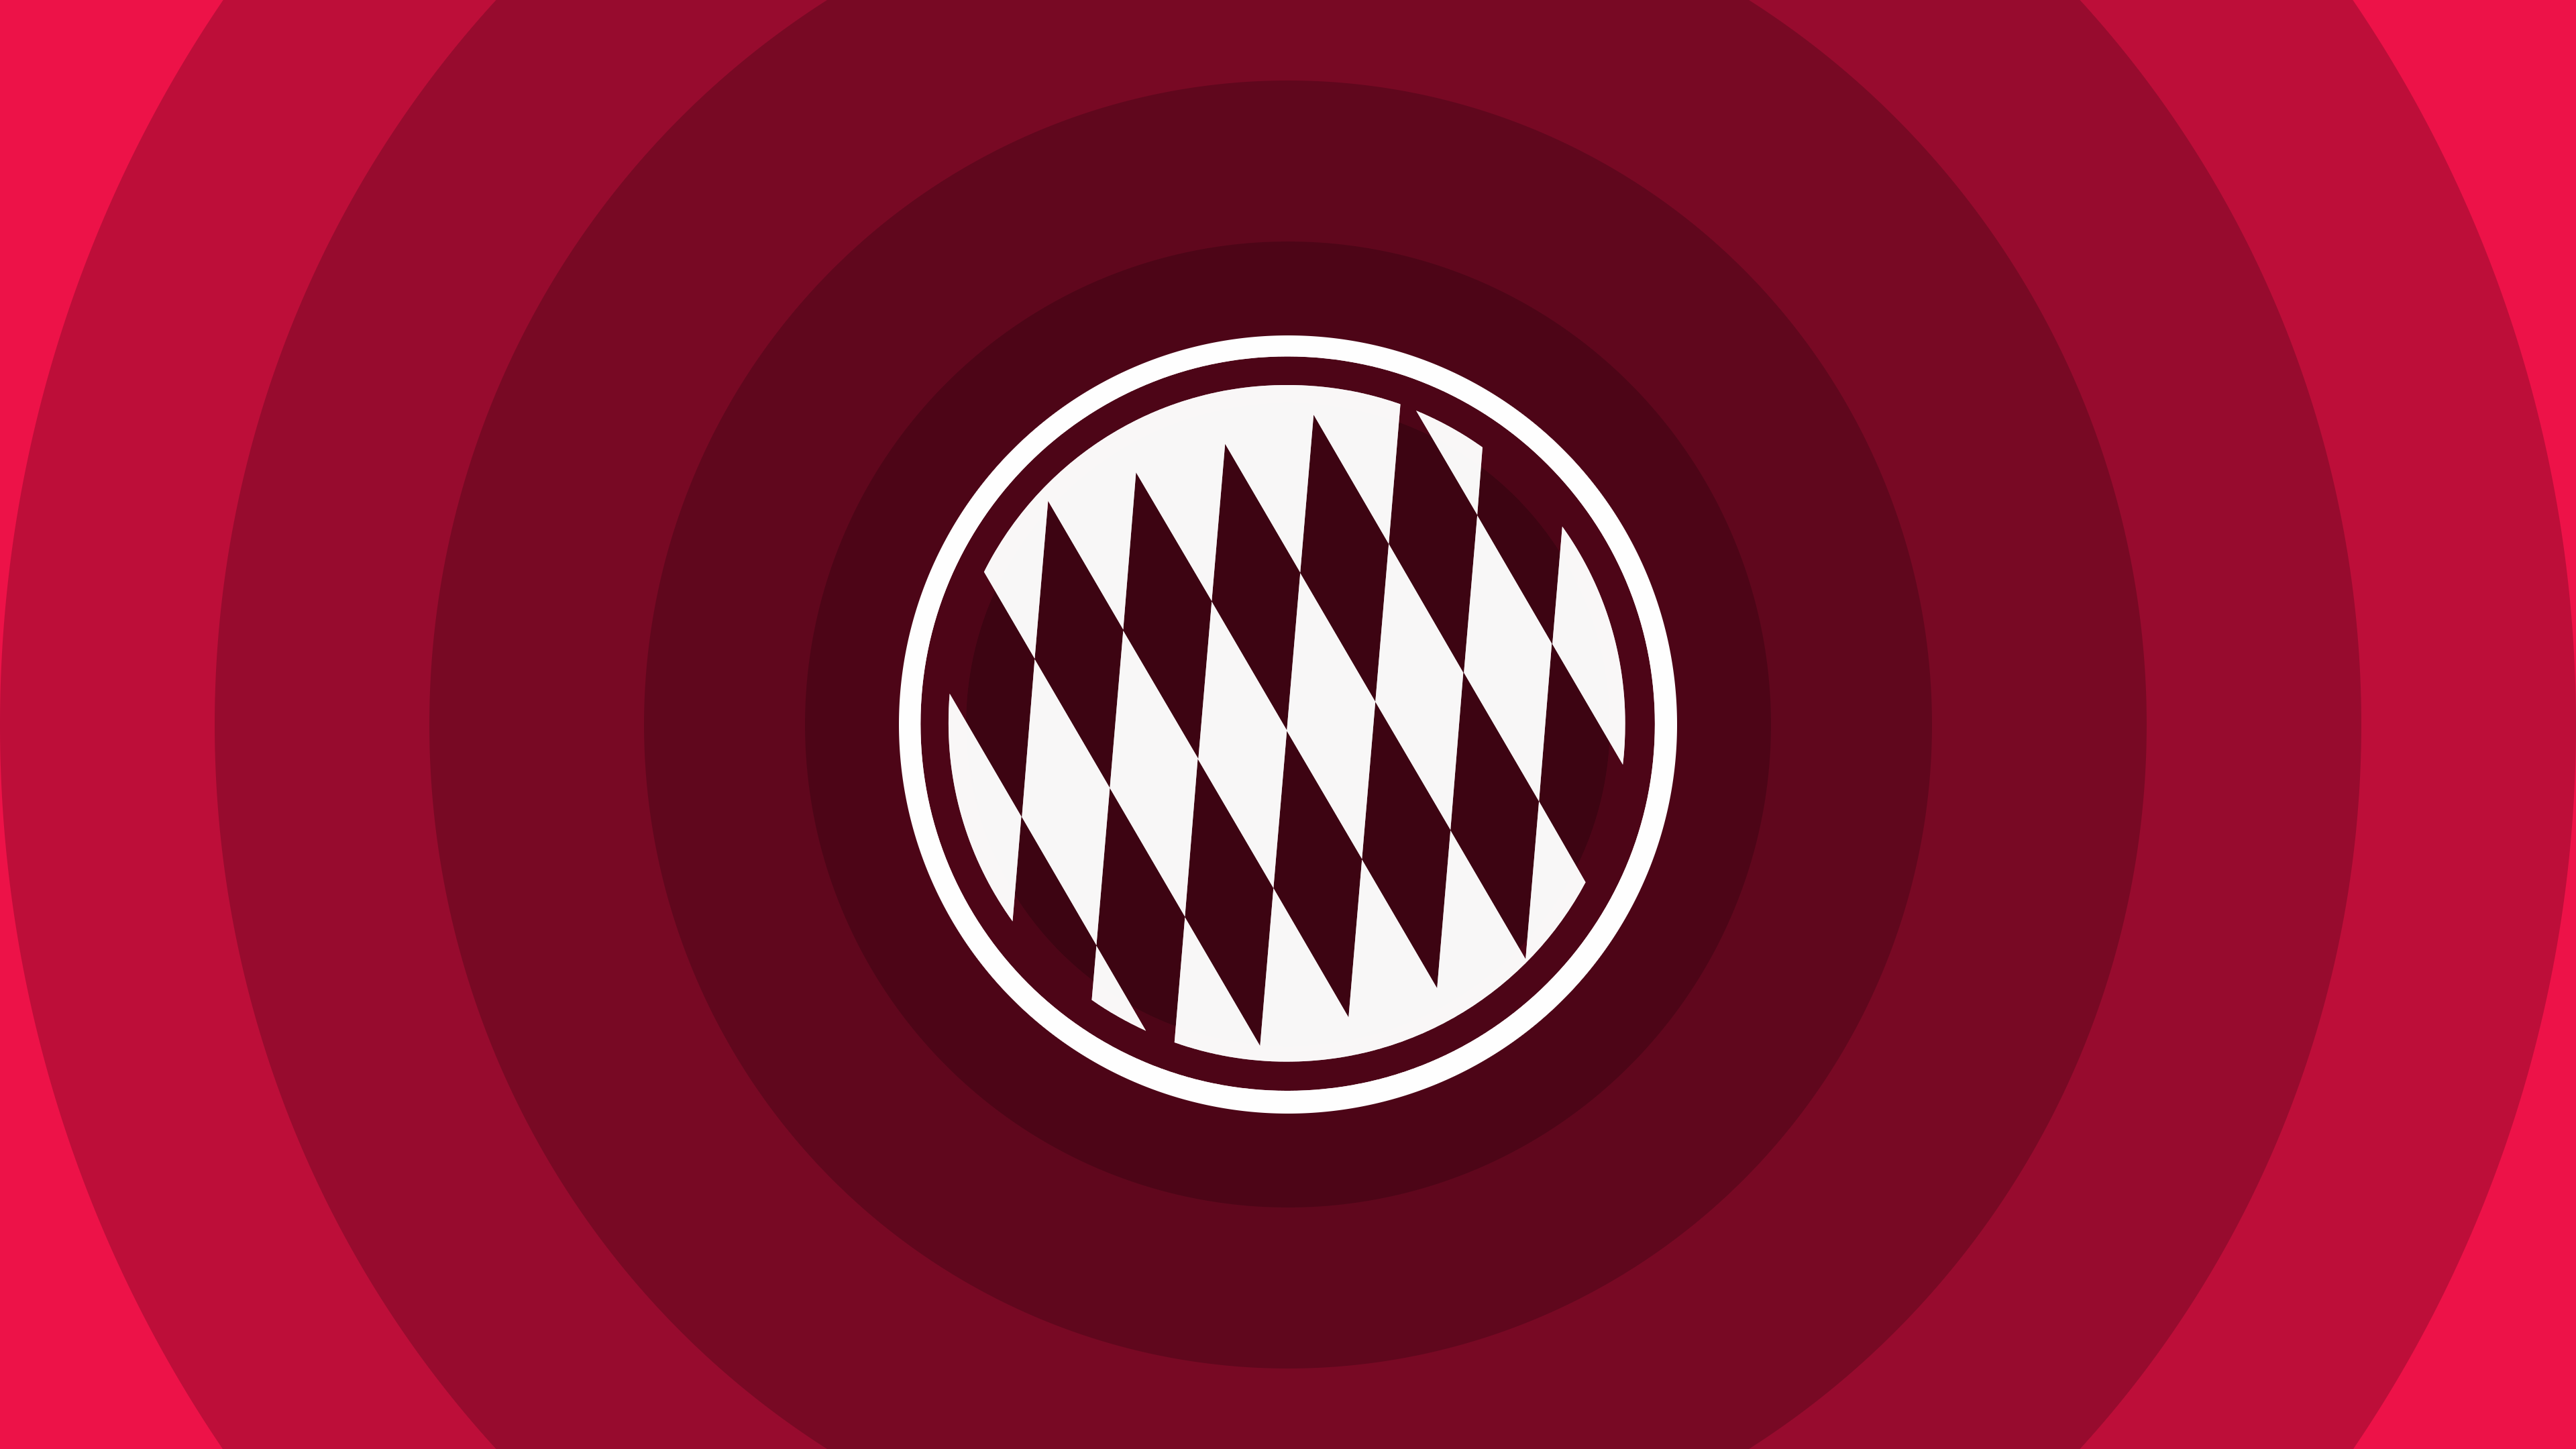 FC Bayern Munich Minimal Logo for 3840 x 2160 Ultra HD resolution